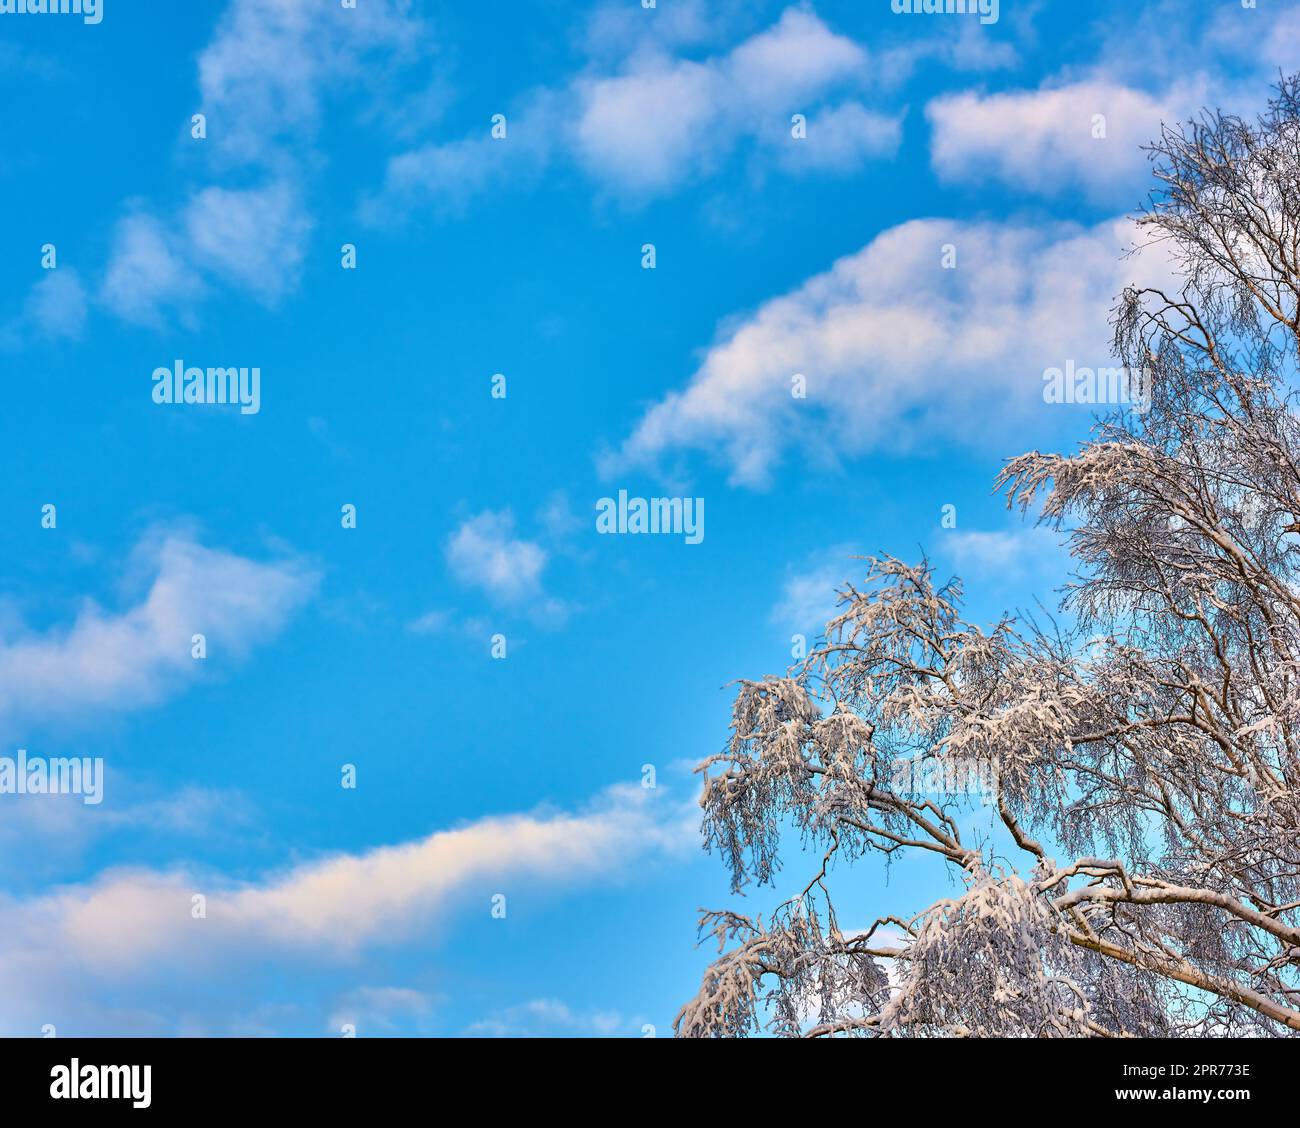 Copia lo spazio con il cielo blu nuvoloso dal basso e i rami di un albero ricoperti di ghiaccio ghiacciato durante il tempo nevoso. Vista panoramica di un paesaggio mozzafiato e di uno sfondo nuvoloso durante la fredda stagione invernale Foto Stock